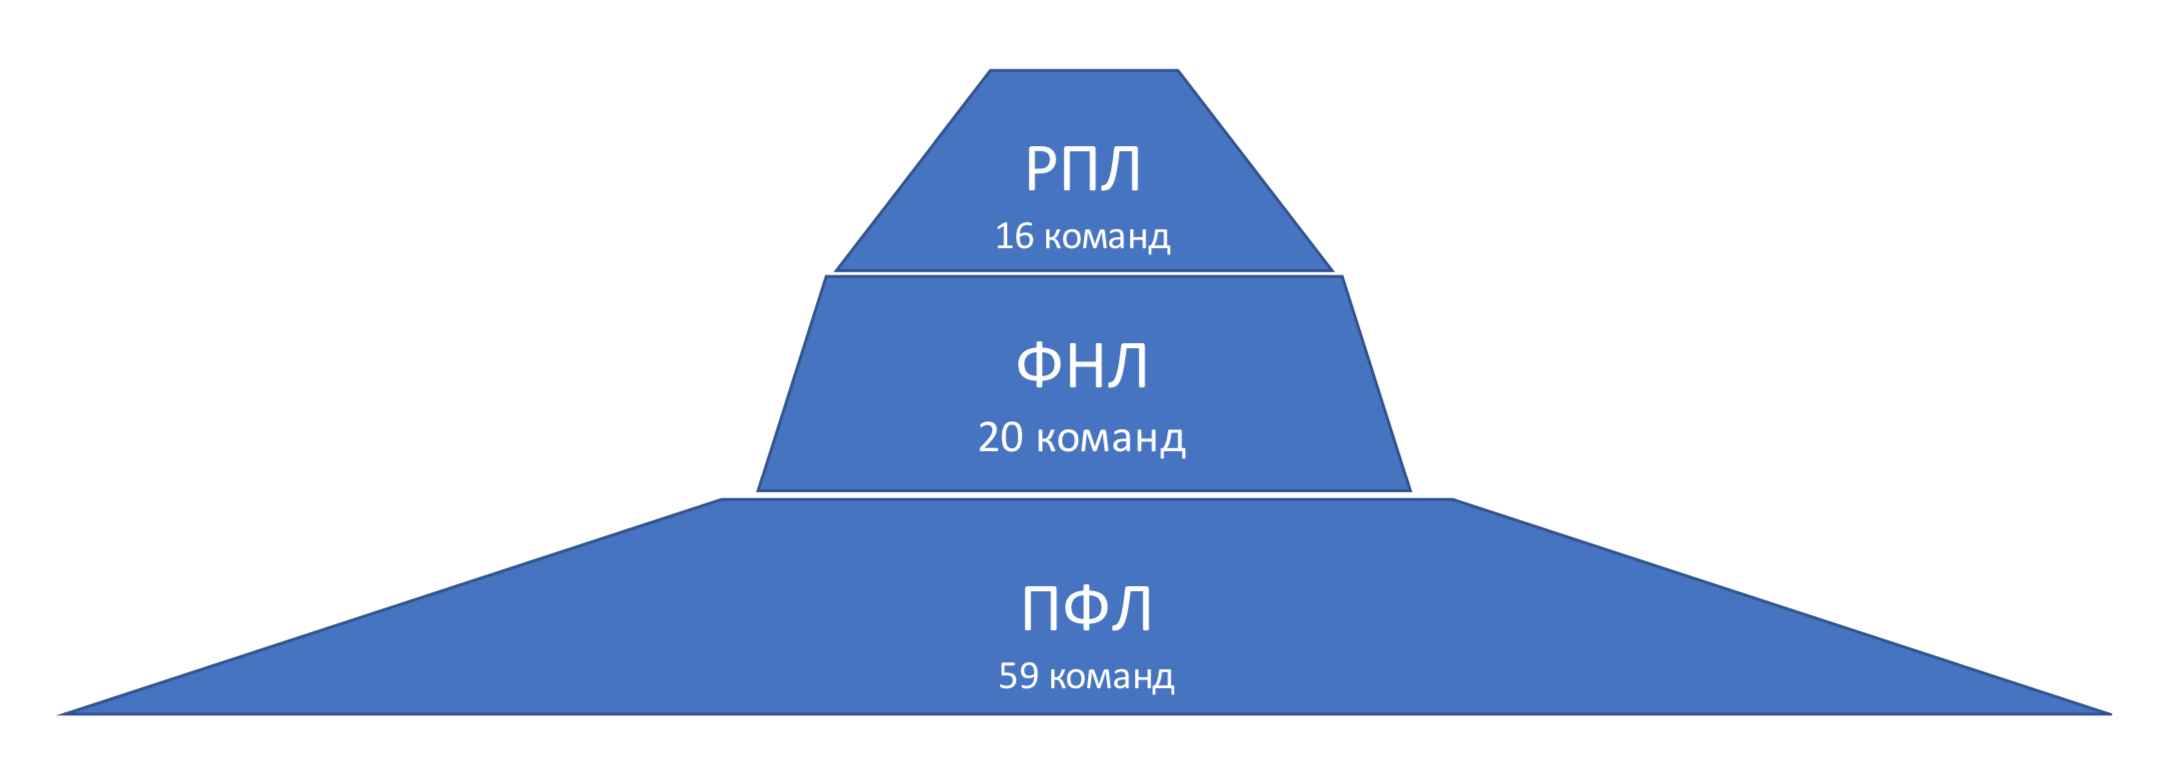 Угол наклона пирамиды или социальный лифт между лигами